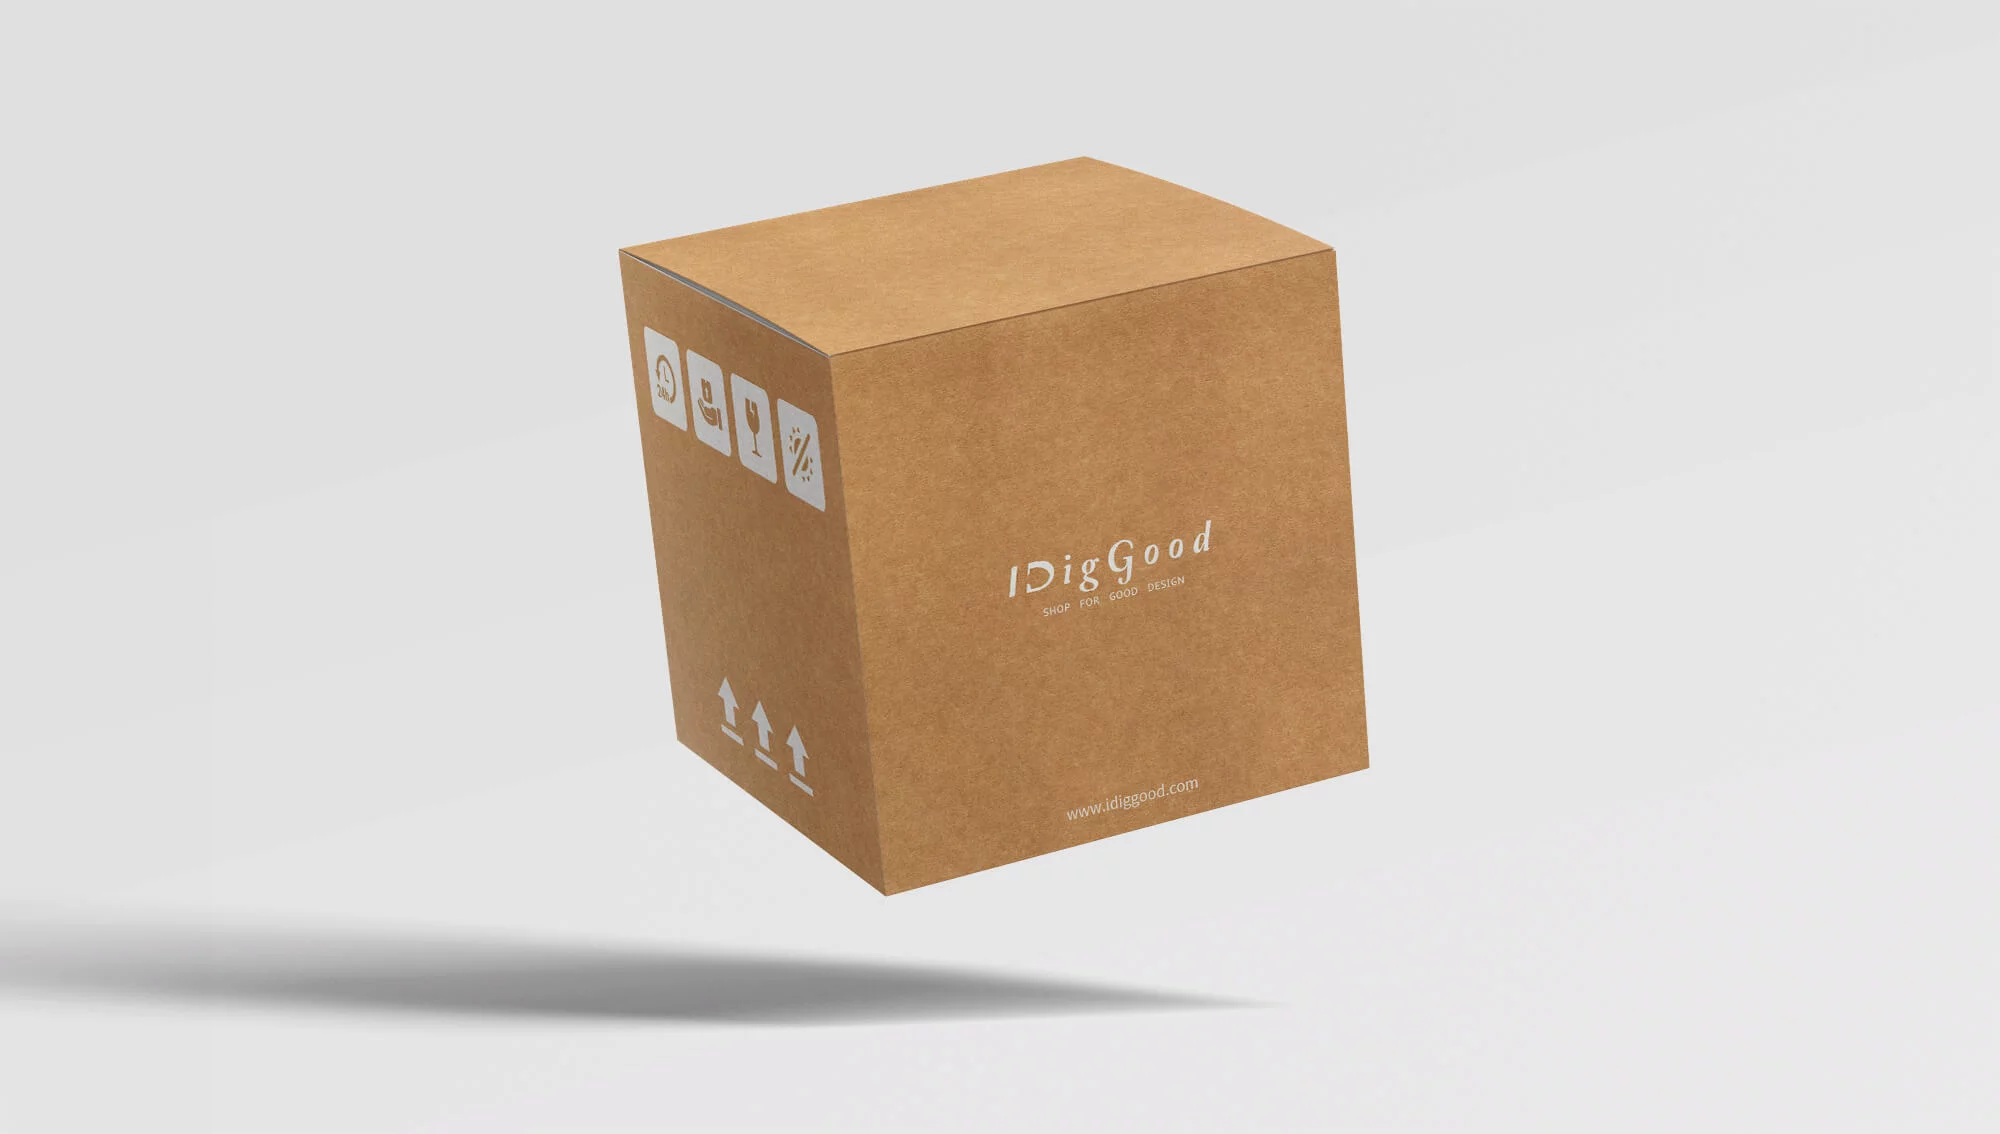 產品包裝 | 盒形設計 | 各類包裝設計就讓傑克大俠來協助您創造經典設計